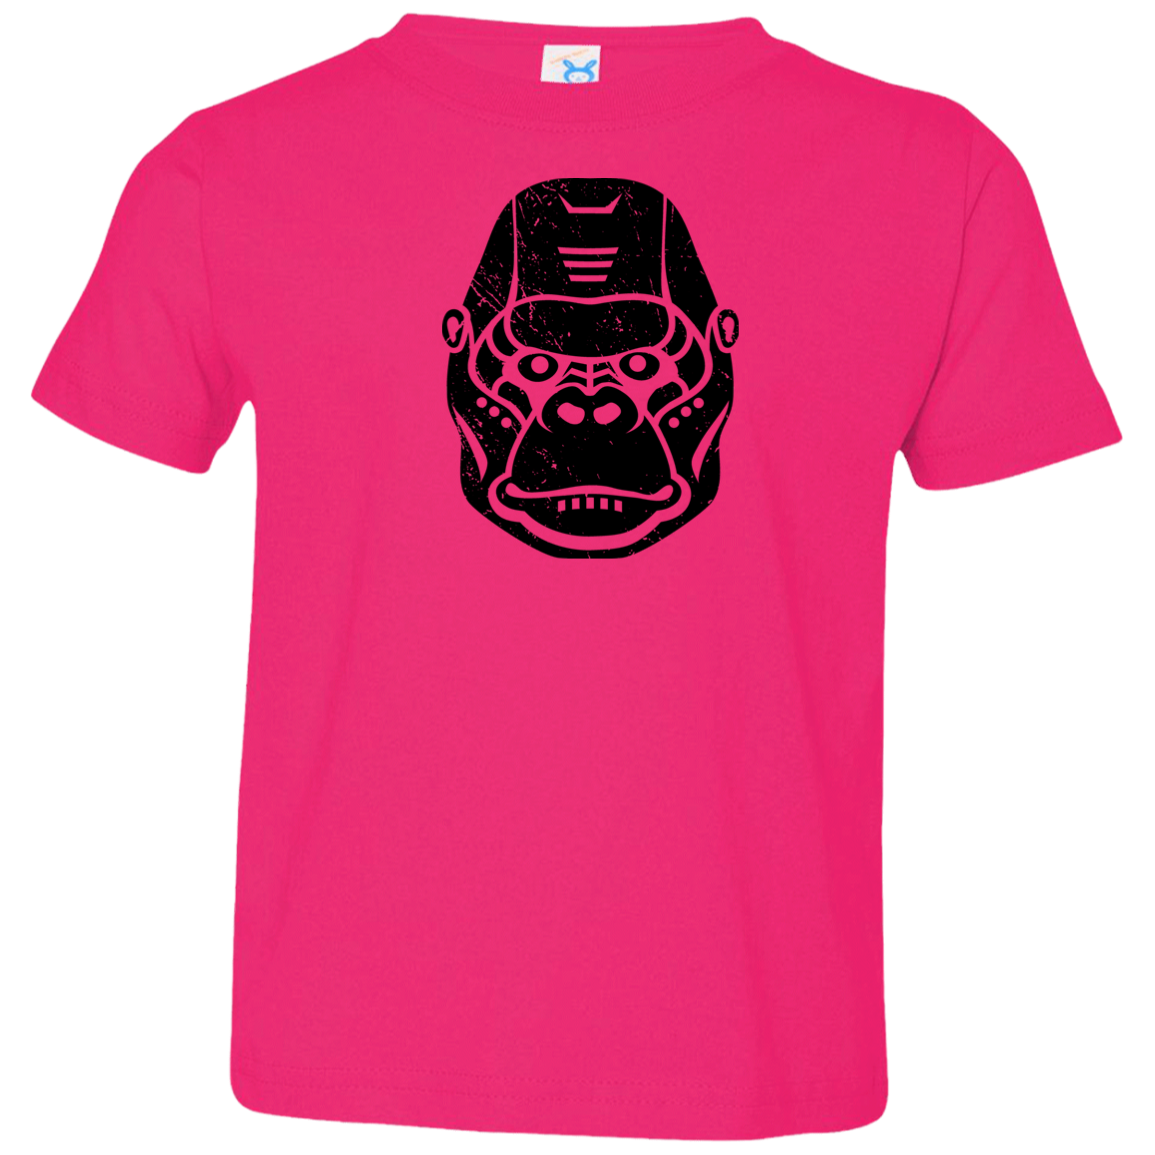 Black Distressed Emblem T-Shirt for Toddlers (Gorilla/Knuckles)